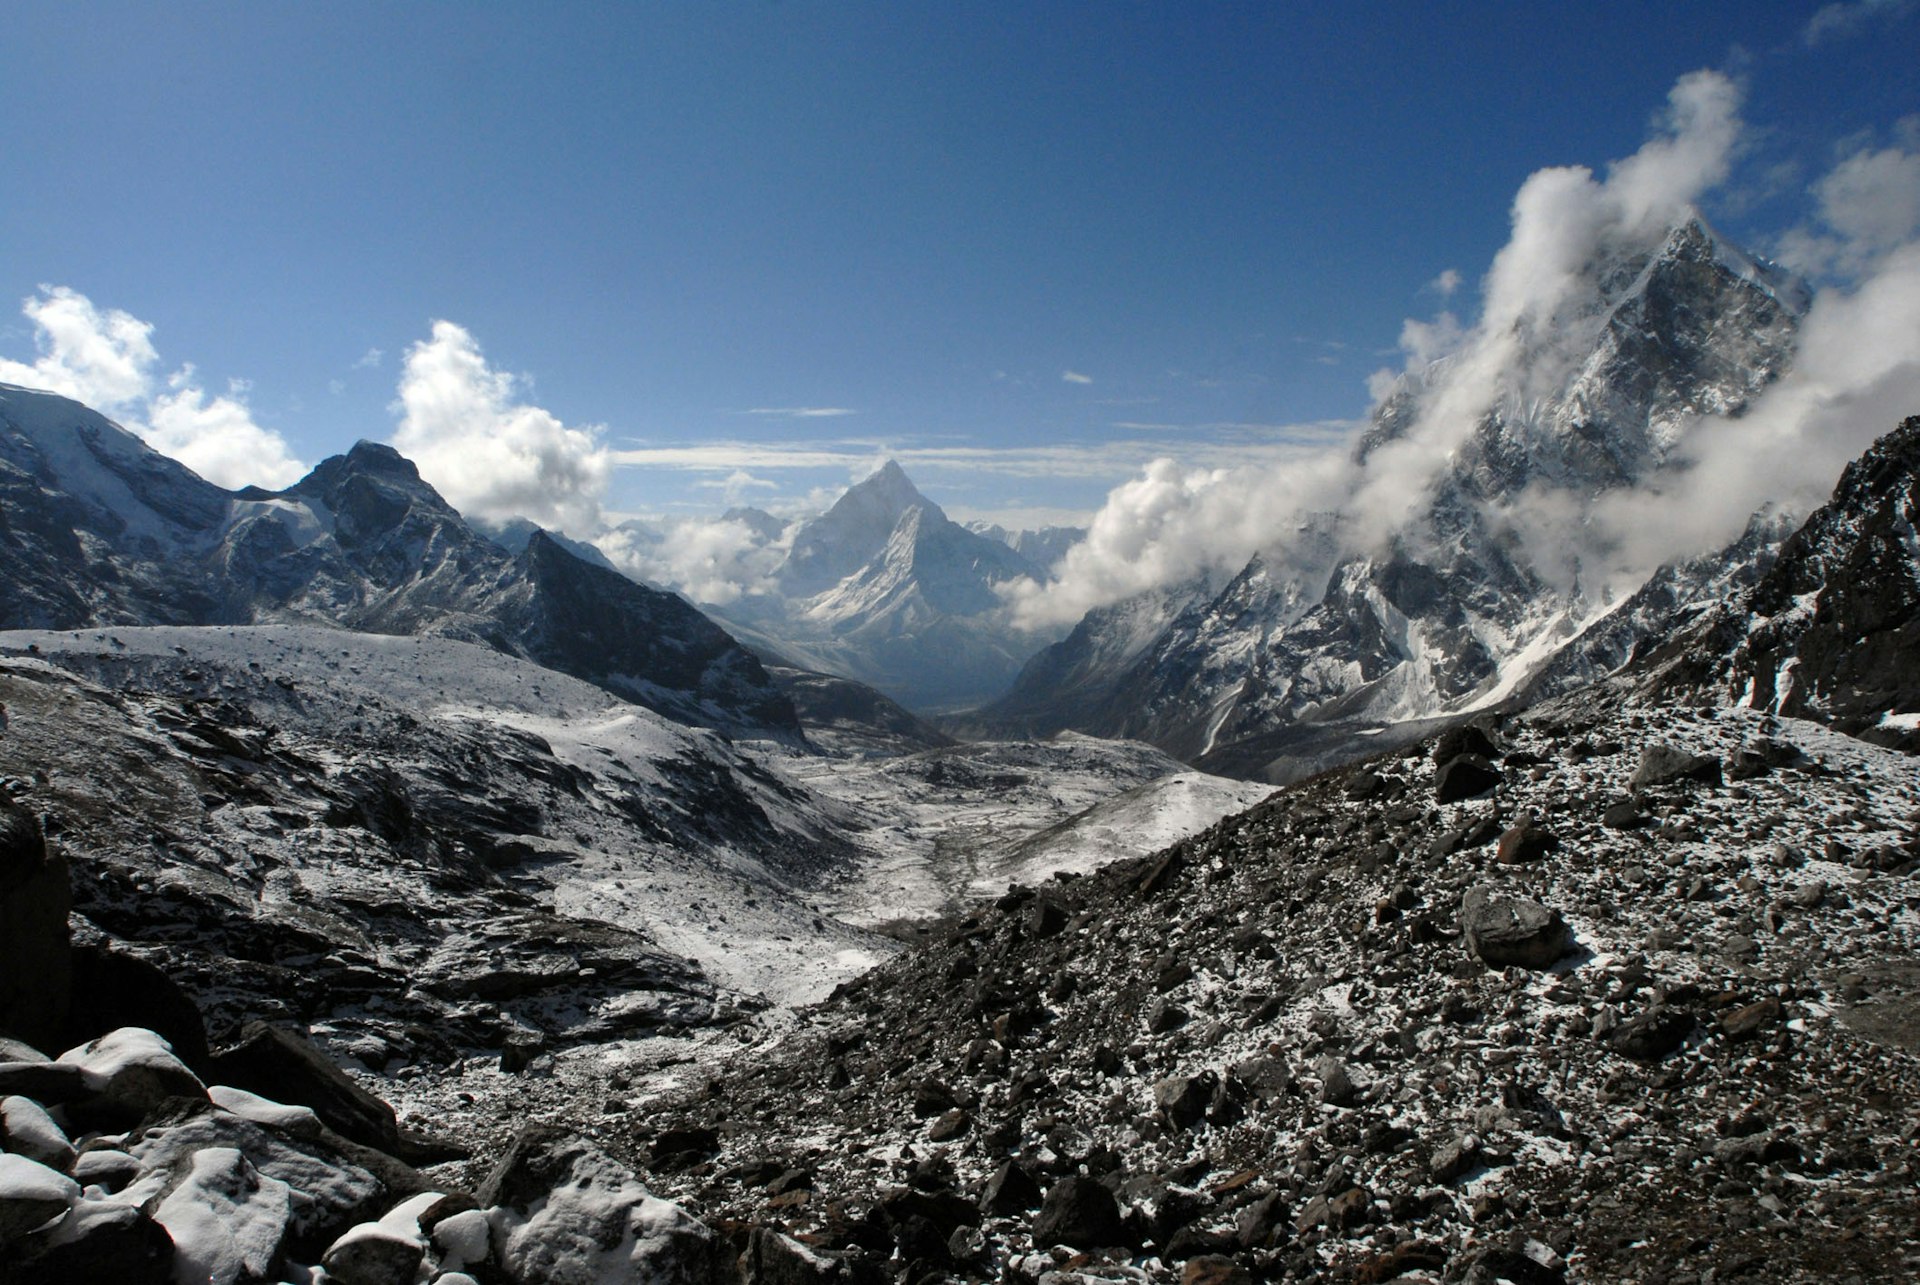 Cho La pass in Nepal